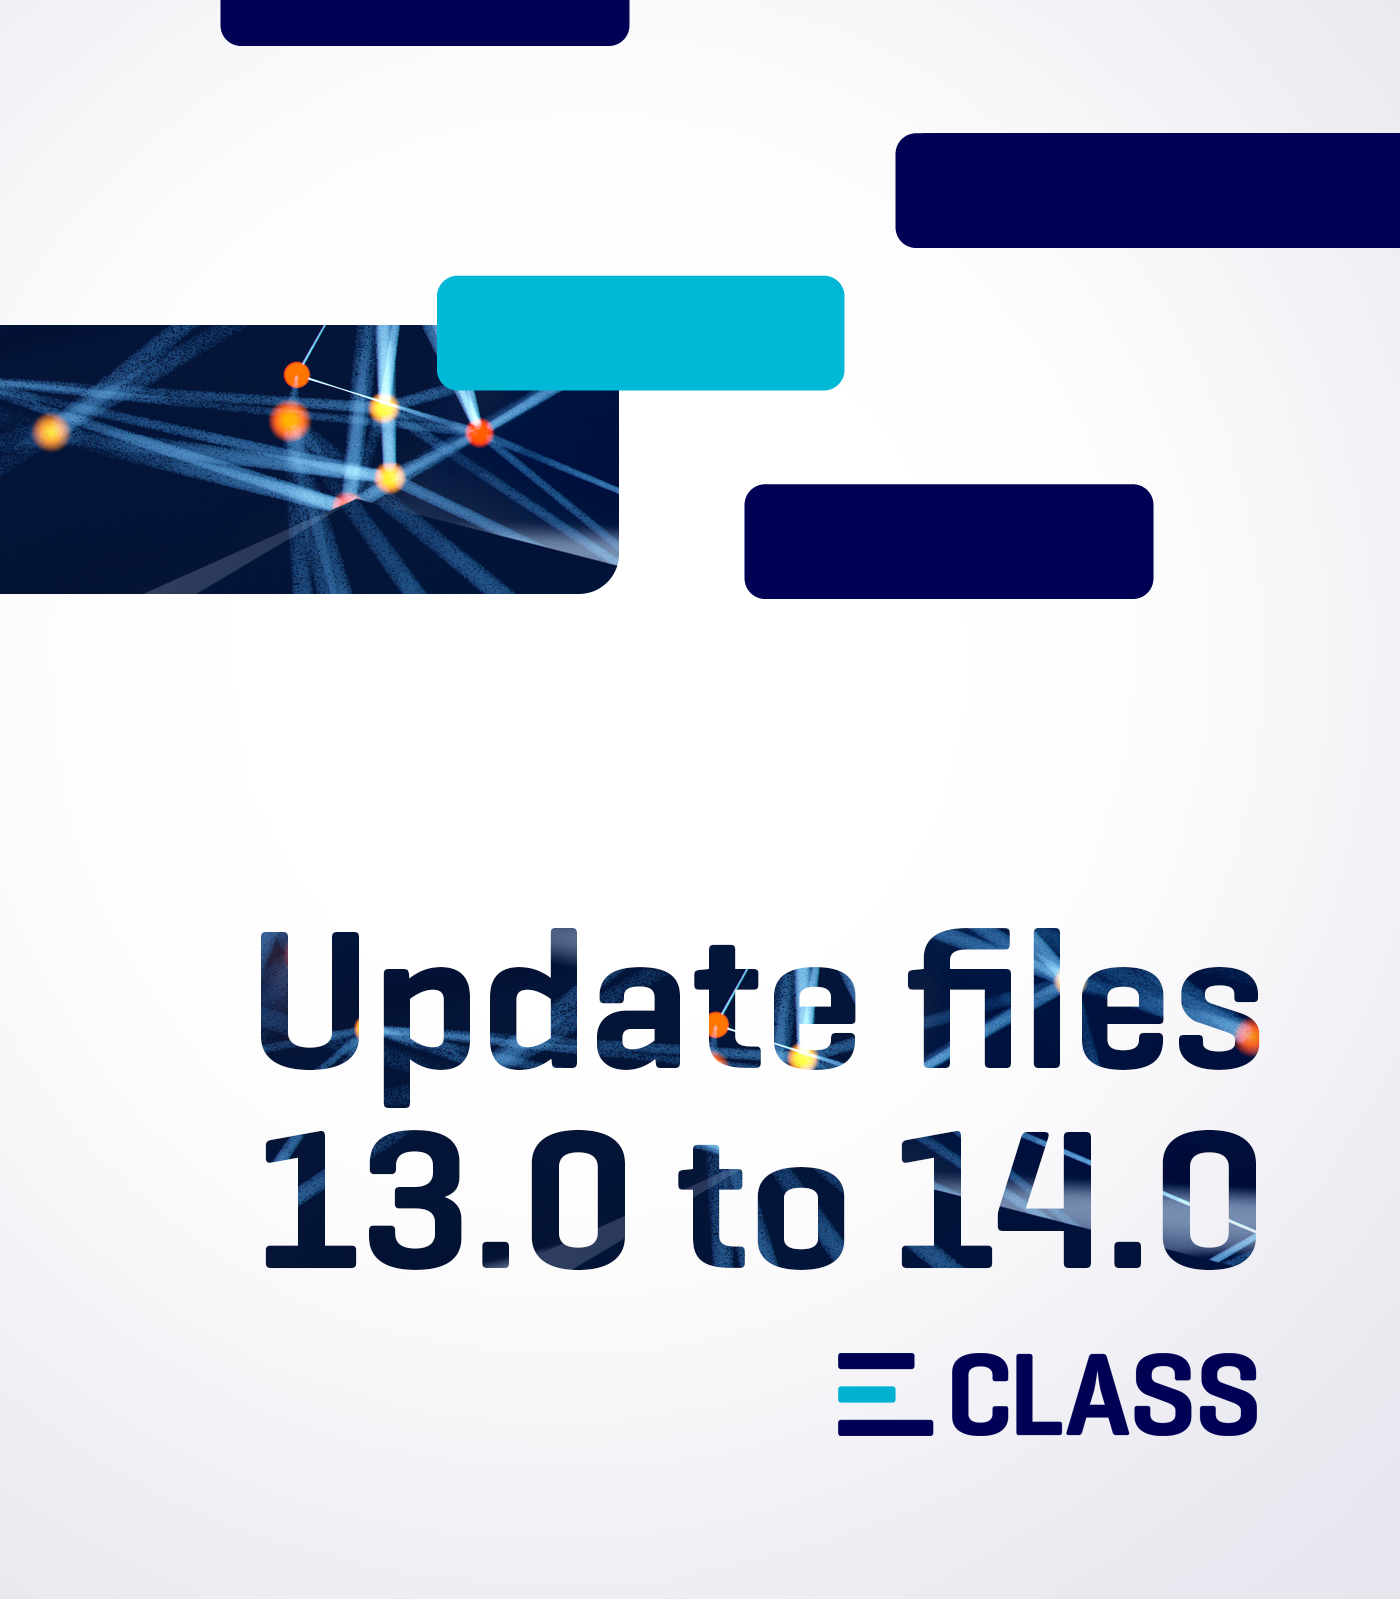 Produktbild: Update Files 13.0 nach 14.0